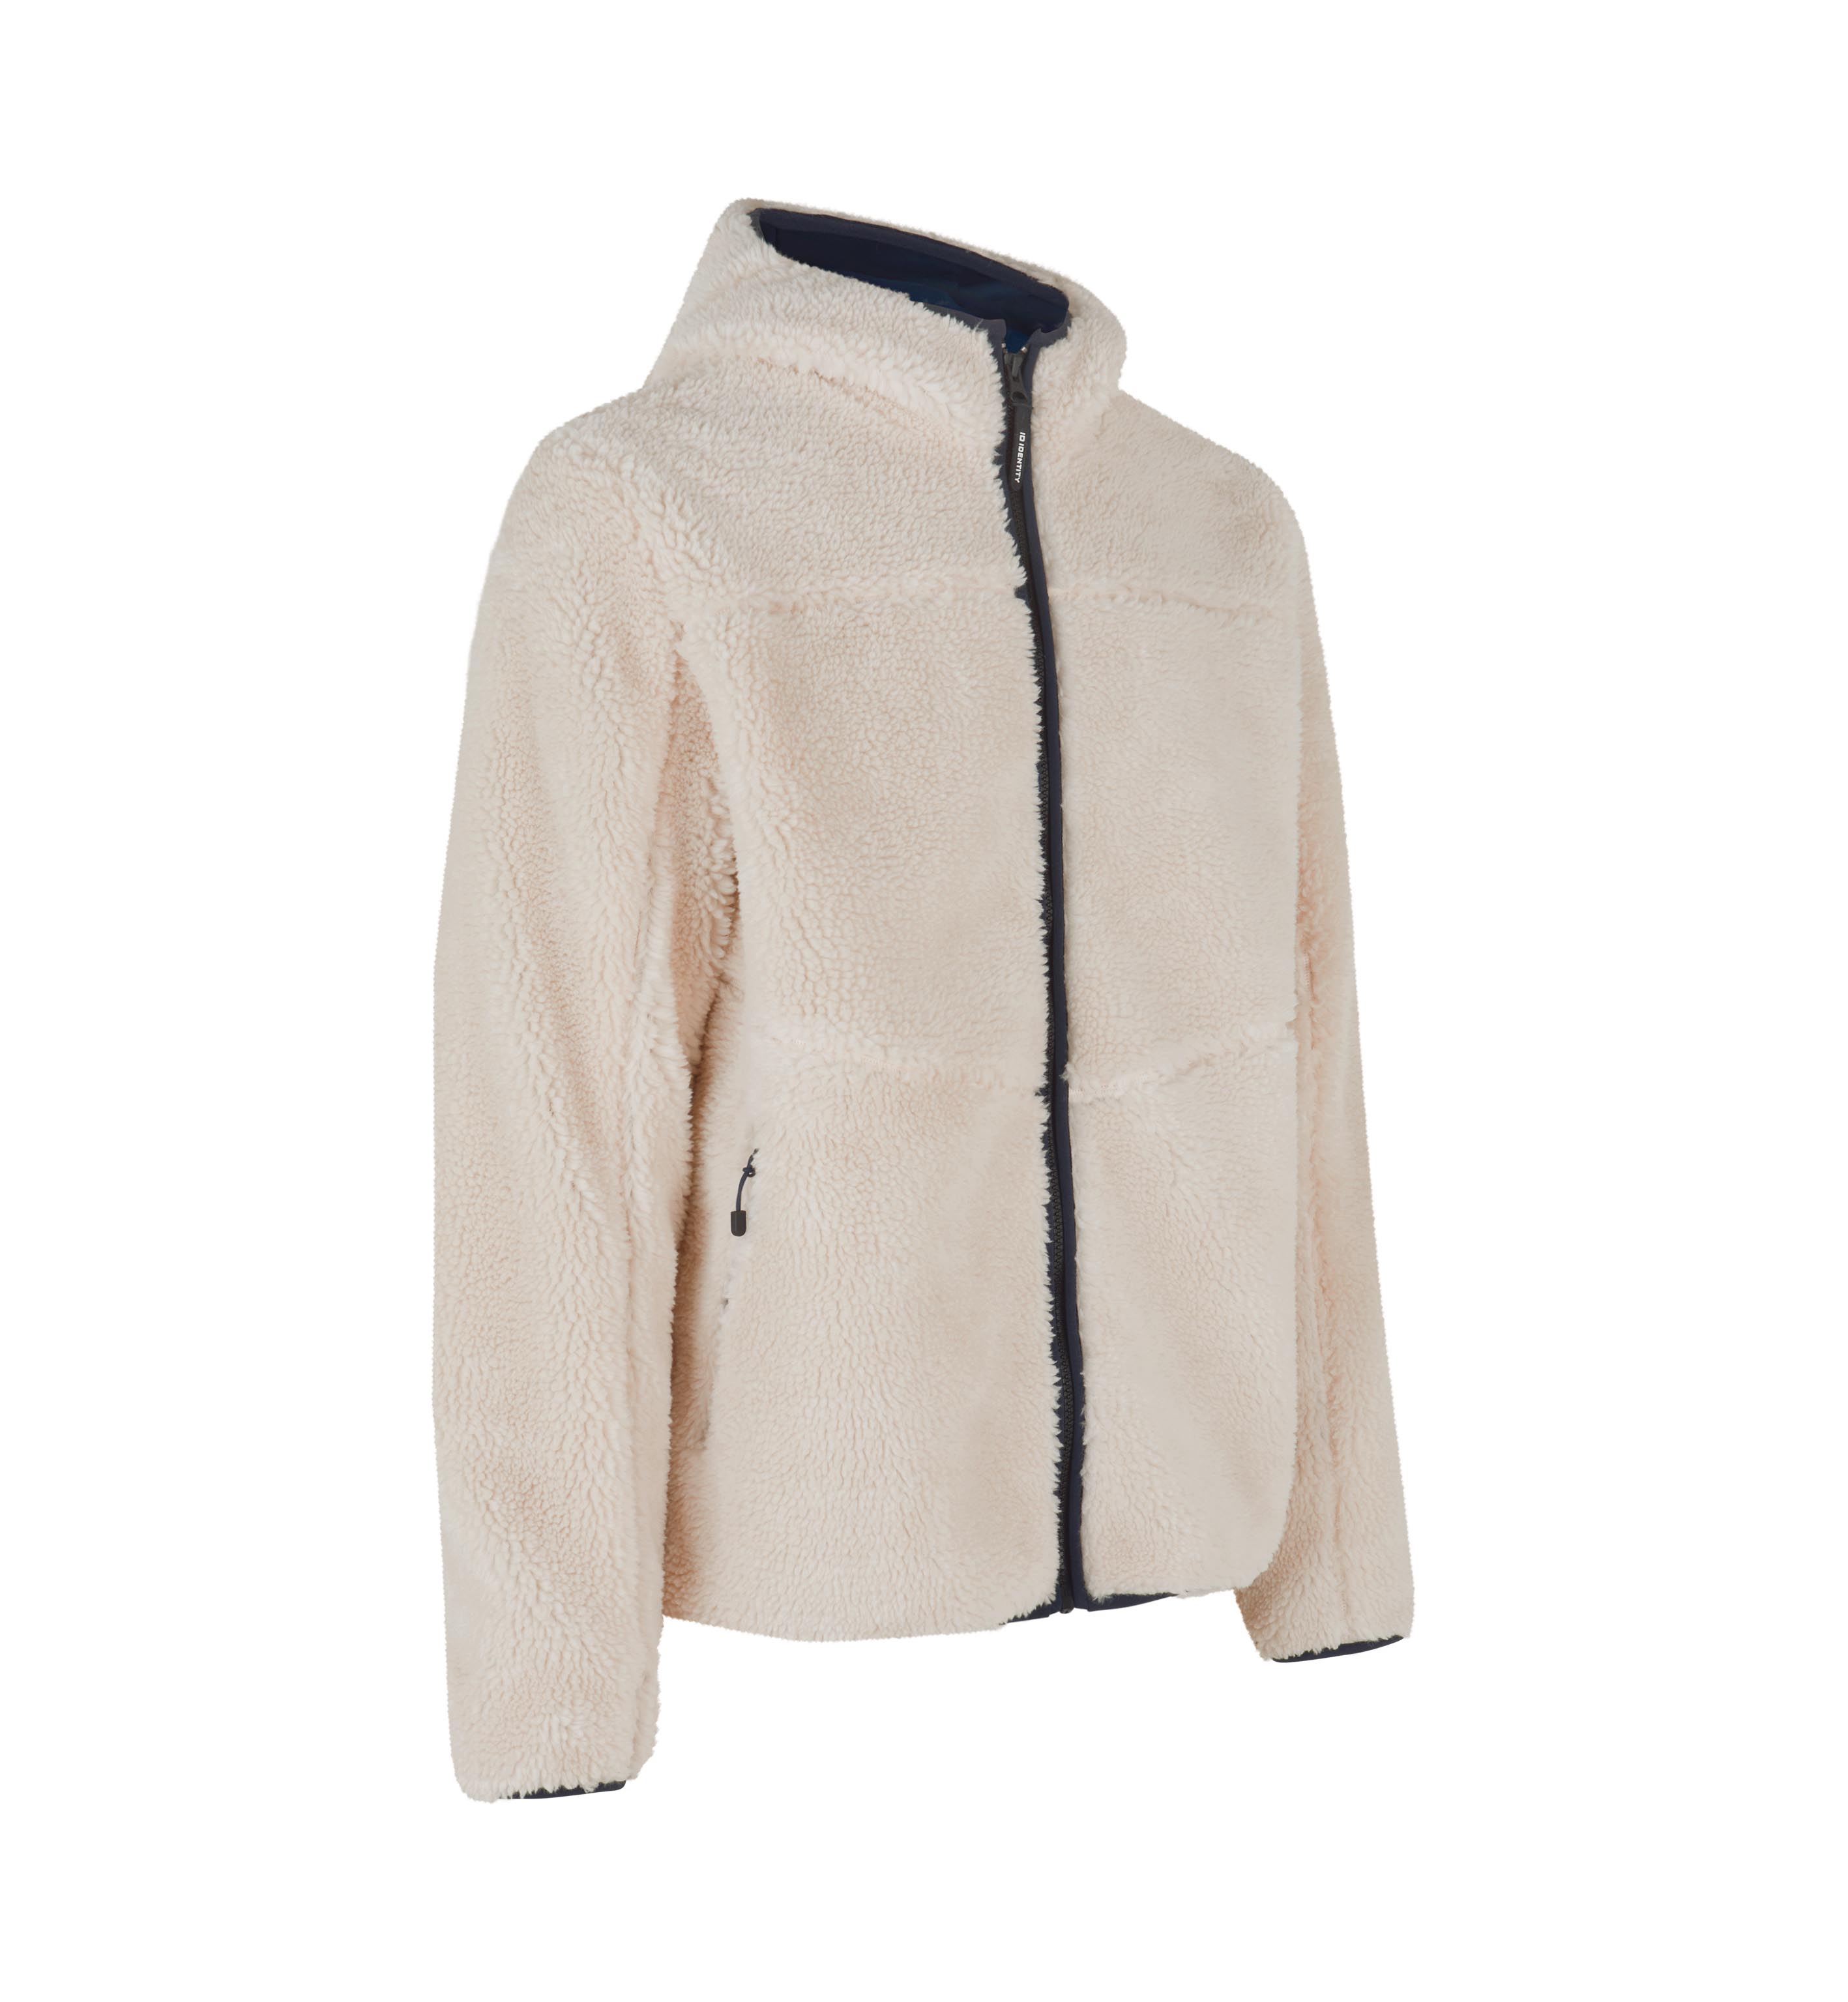 Pile fleece jacket